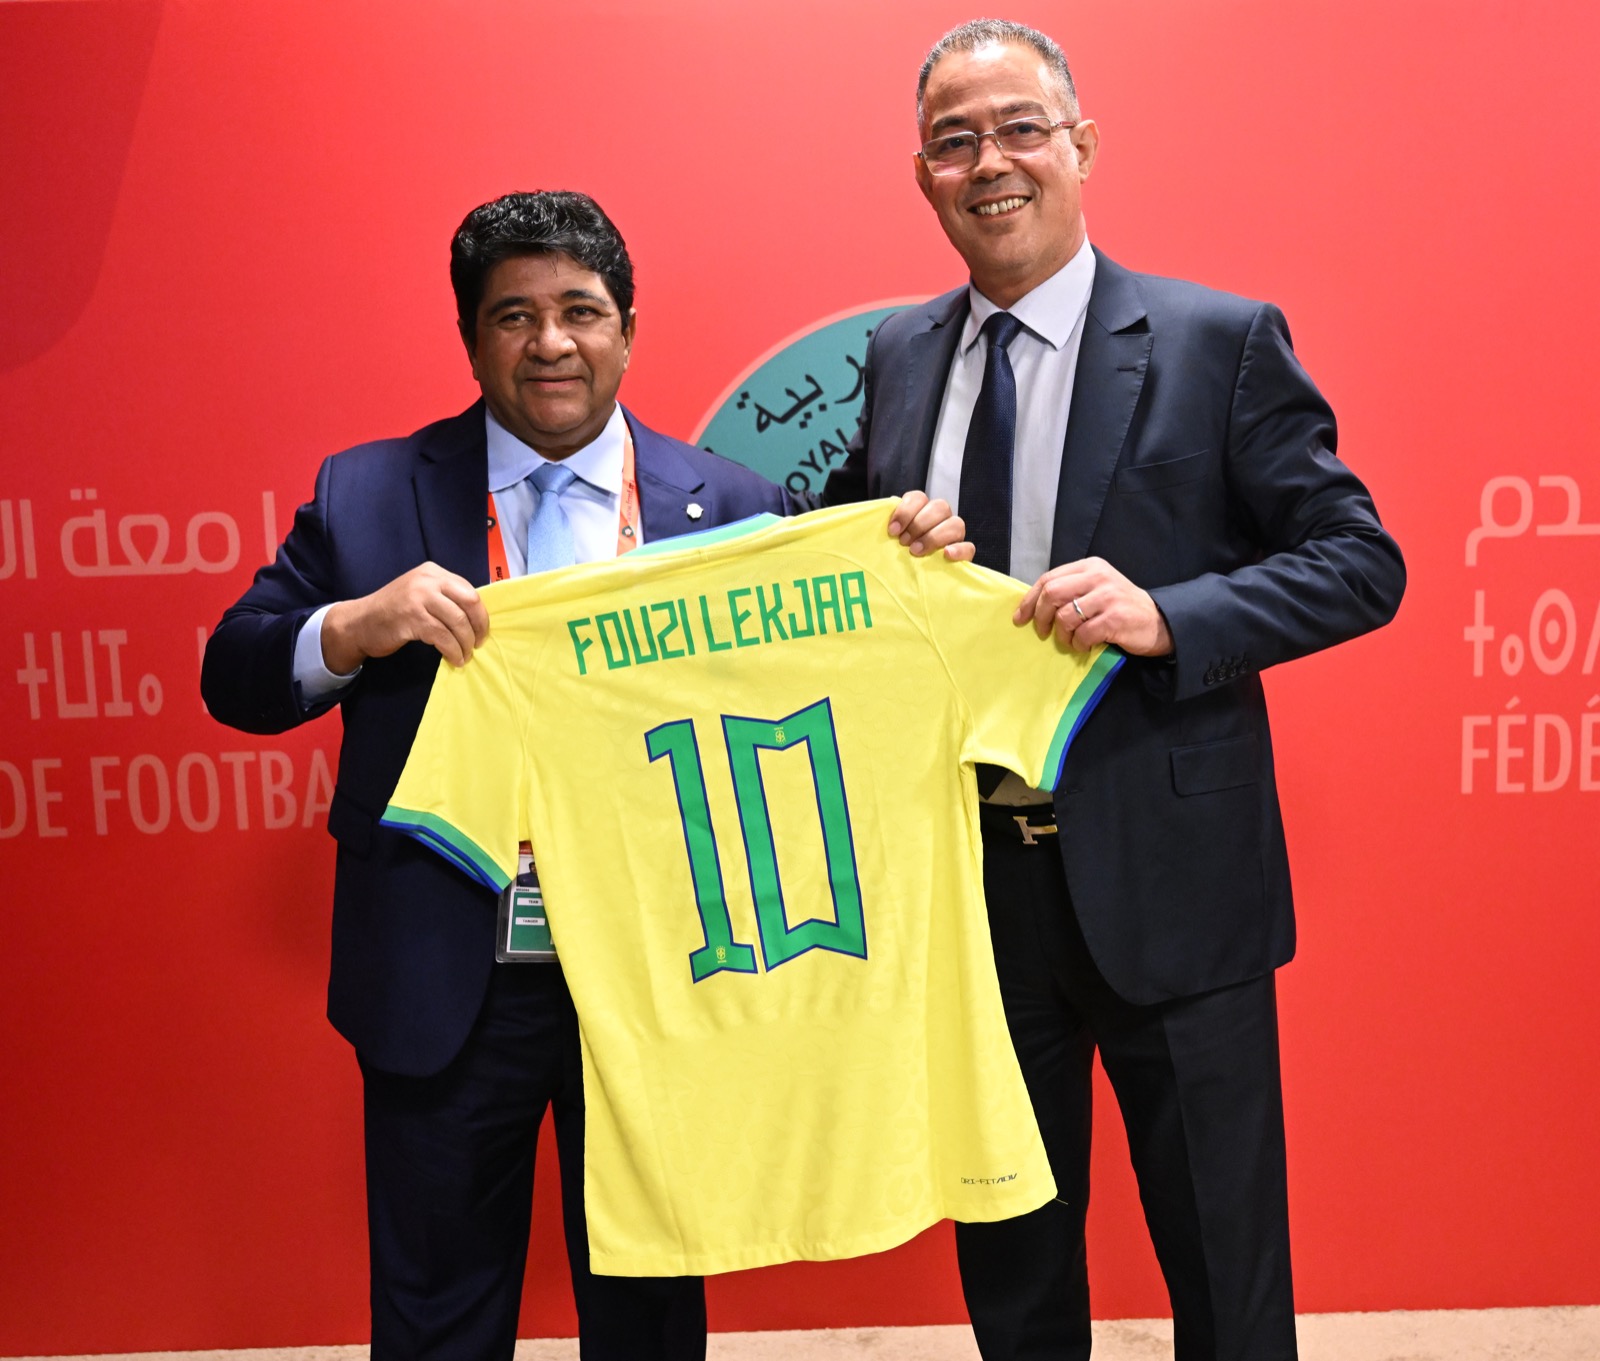 رئيس الإتحاد البرازيلي يتبادل مع فوزي لقجع قميص المنتخبين ويشيد بالعلاقات الجيدة مع الجامعة الملكية المغربية